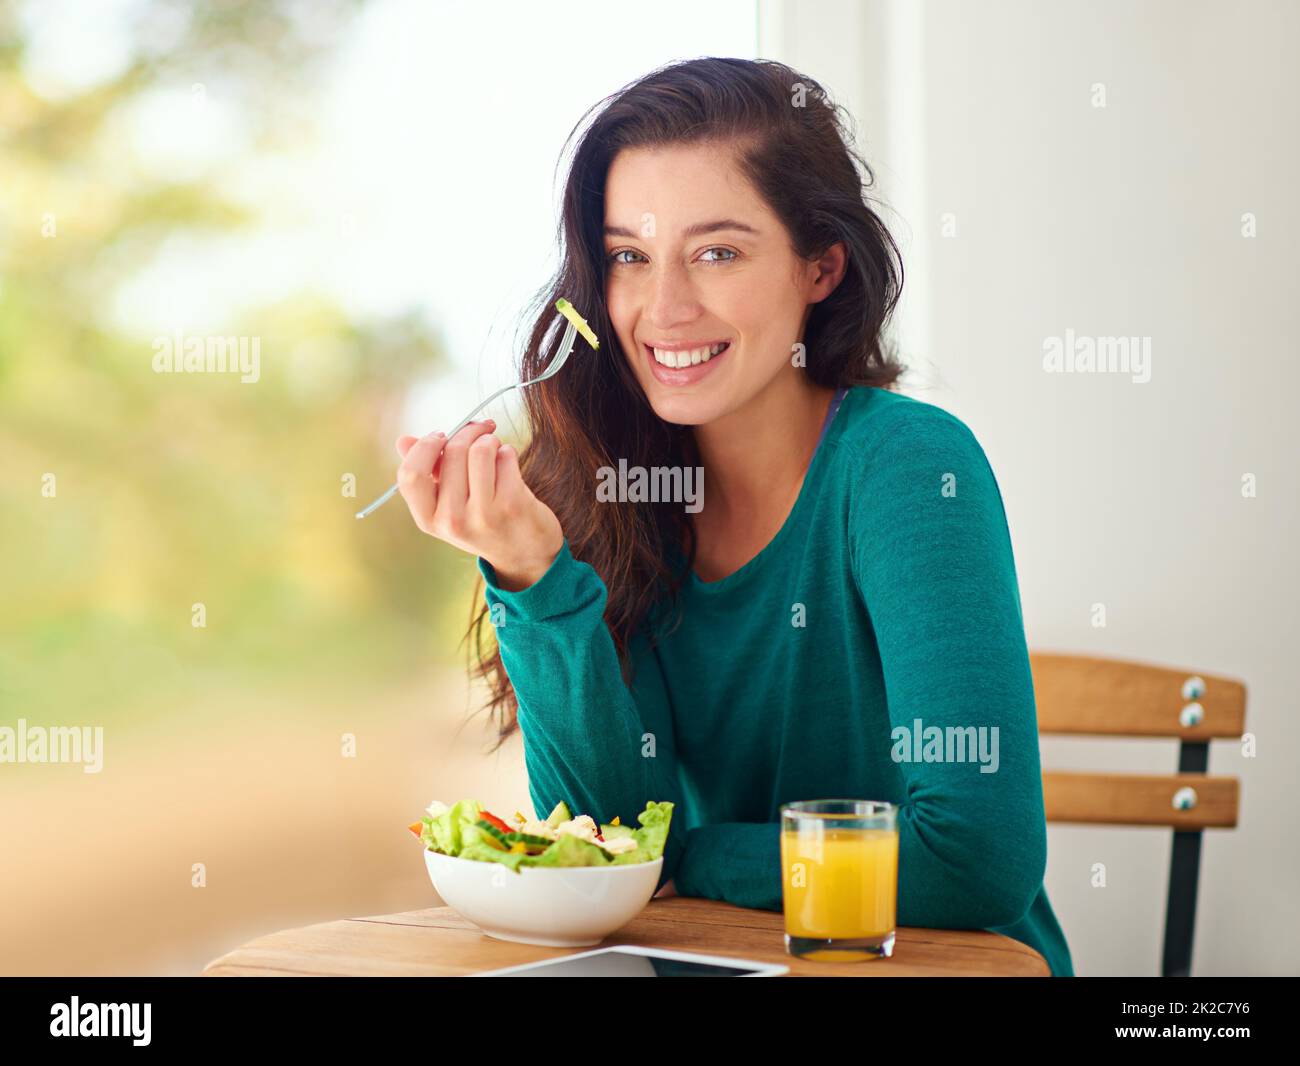 La salud es felicidad. Retrato de una mujer joven comiendo una ensalada saludable en casa. Foto de stock